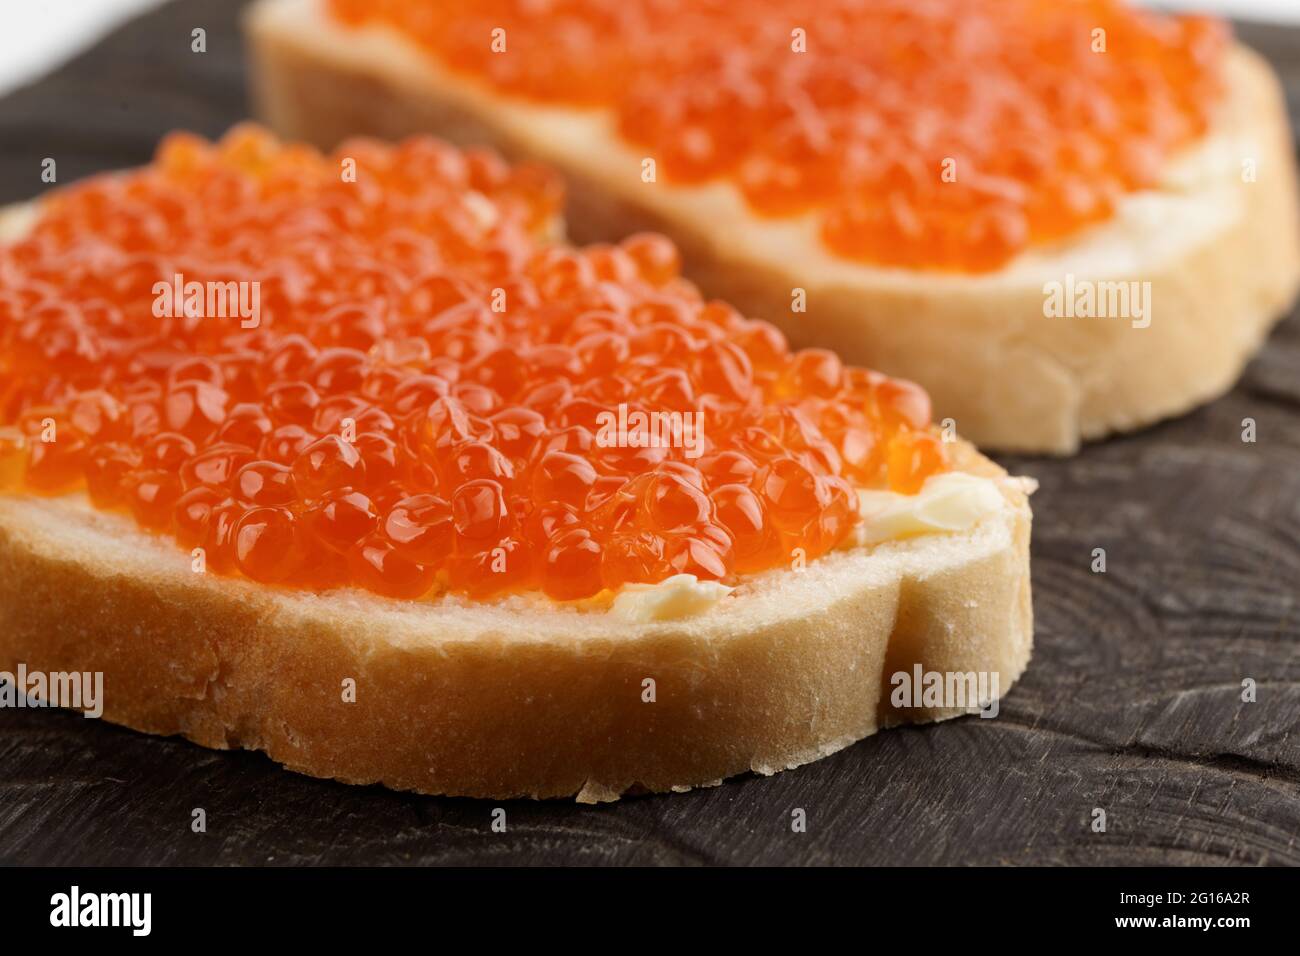 Dos panes con huevas de salmón rojo sobre plato de madera Foto de stock